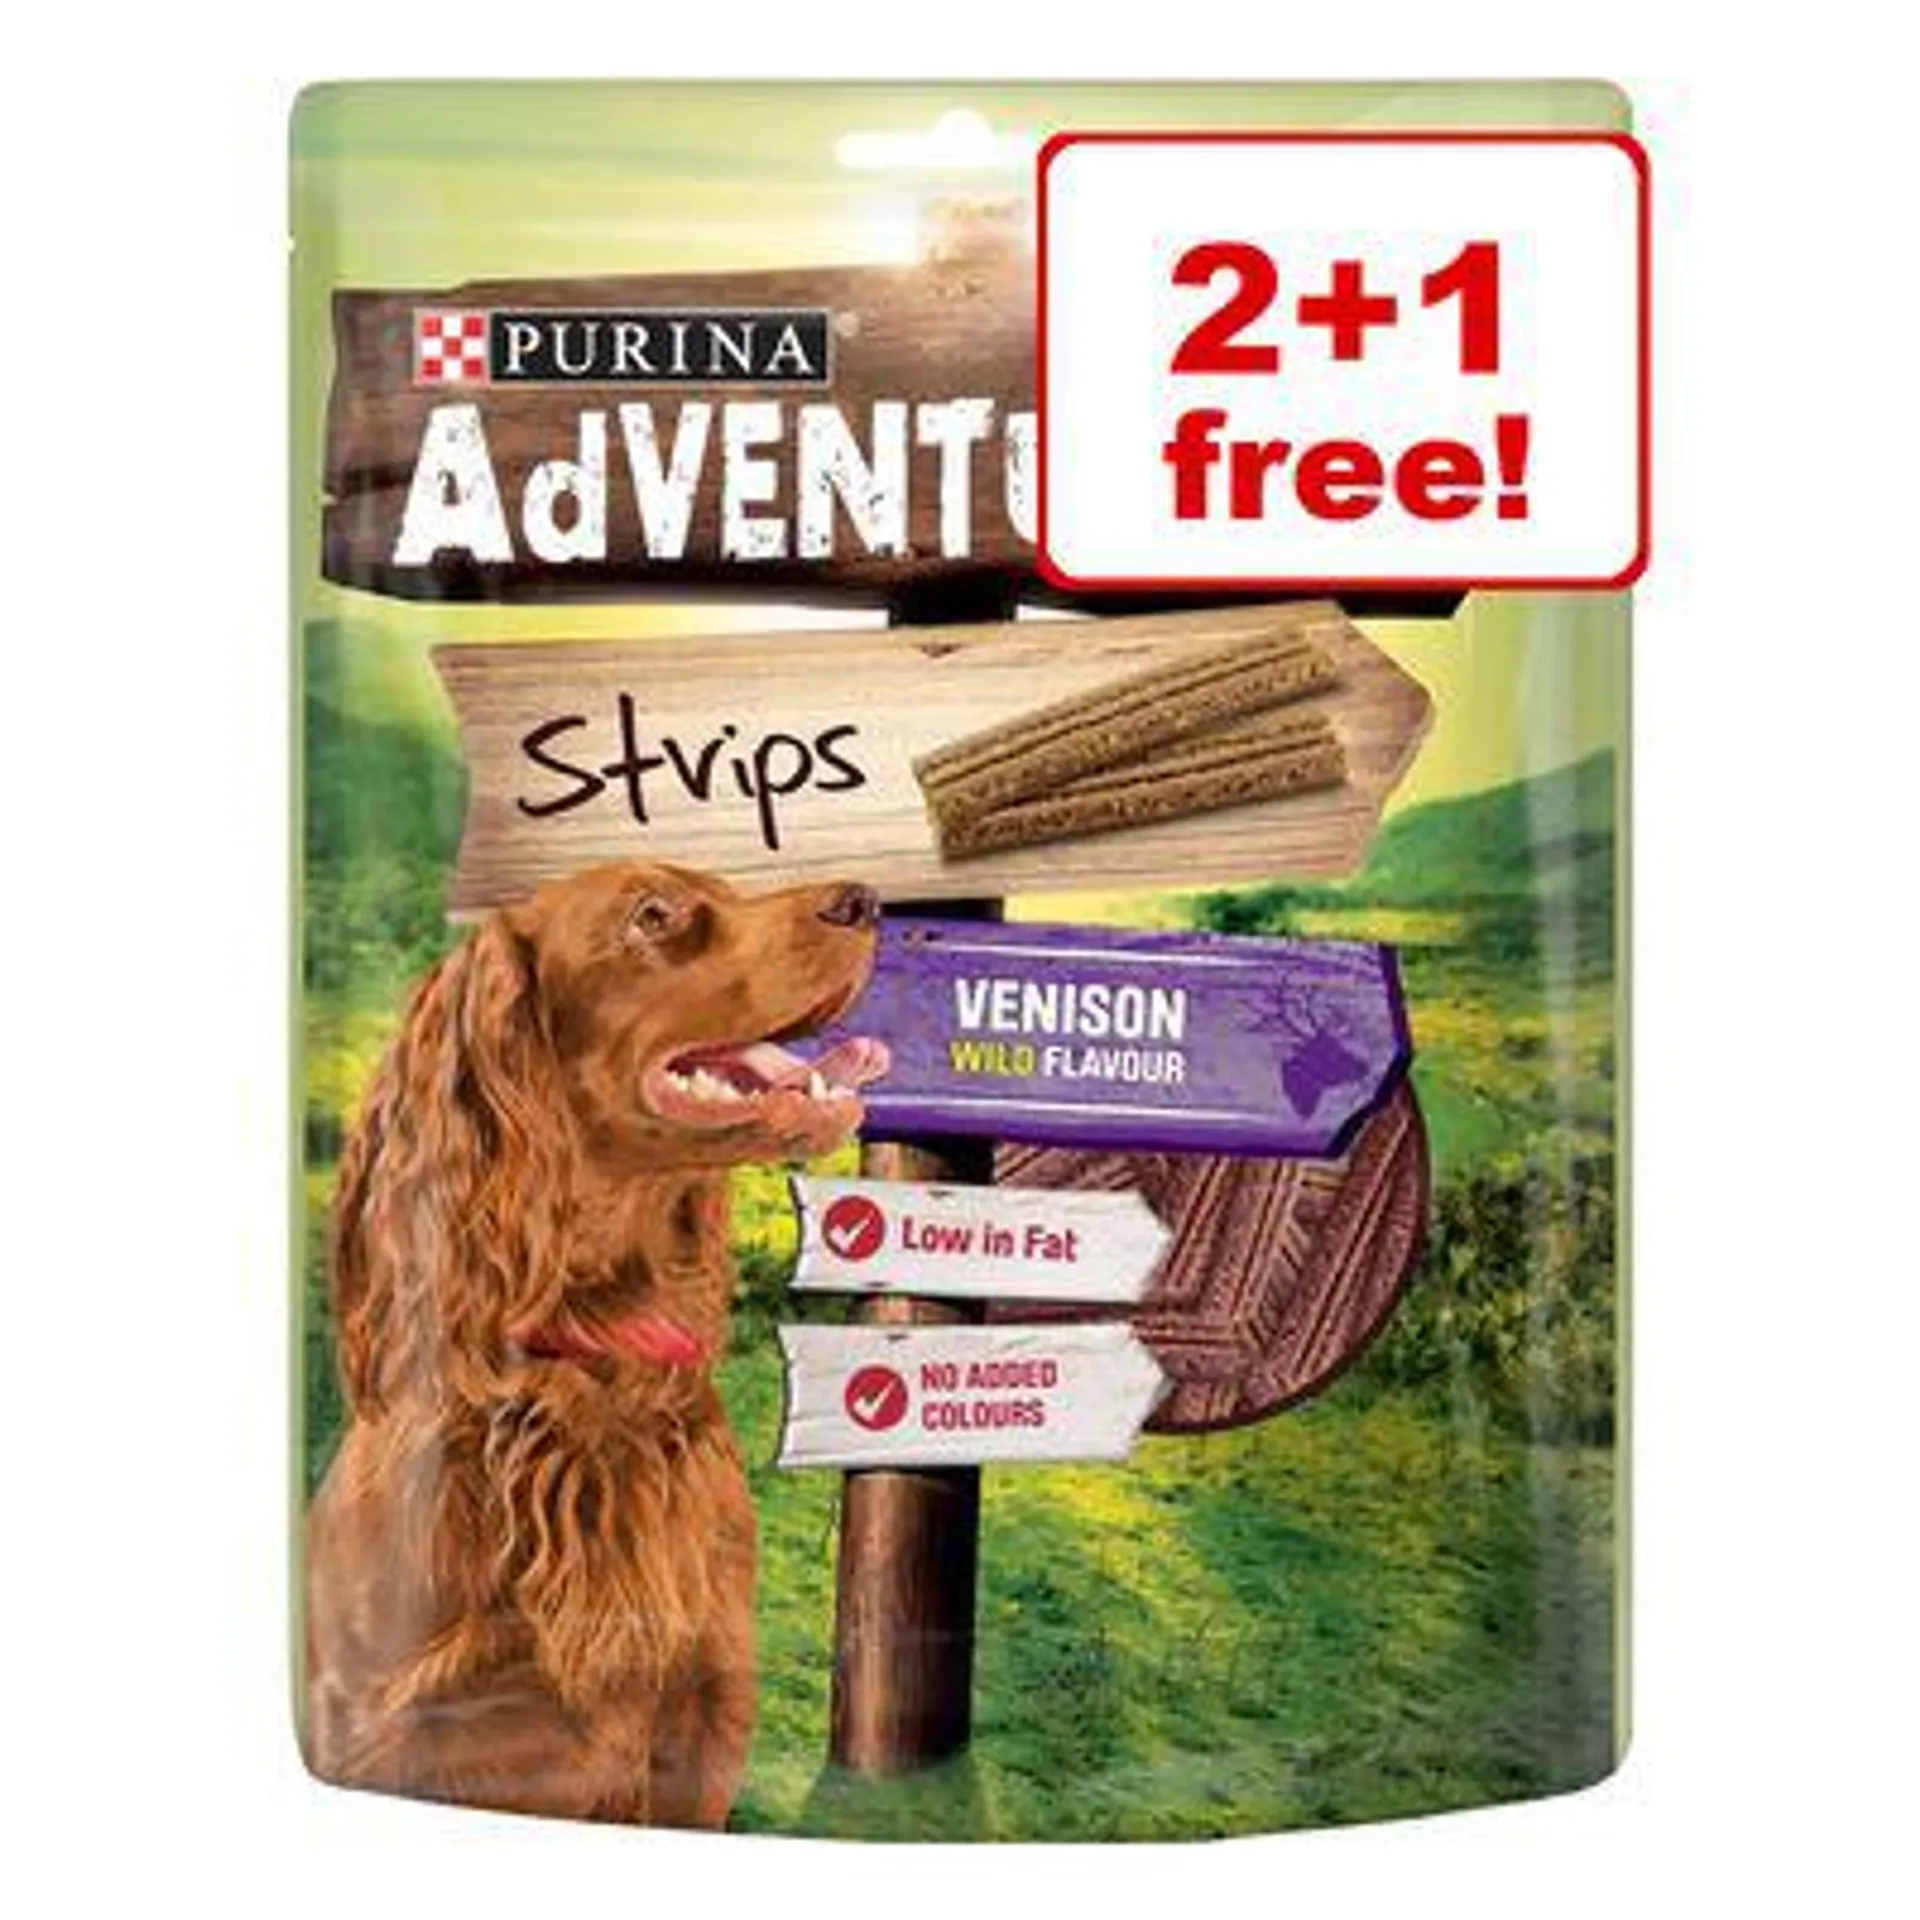 3 x PURINA Adventuros Dog Treats - 2 + 1 Free! *